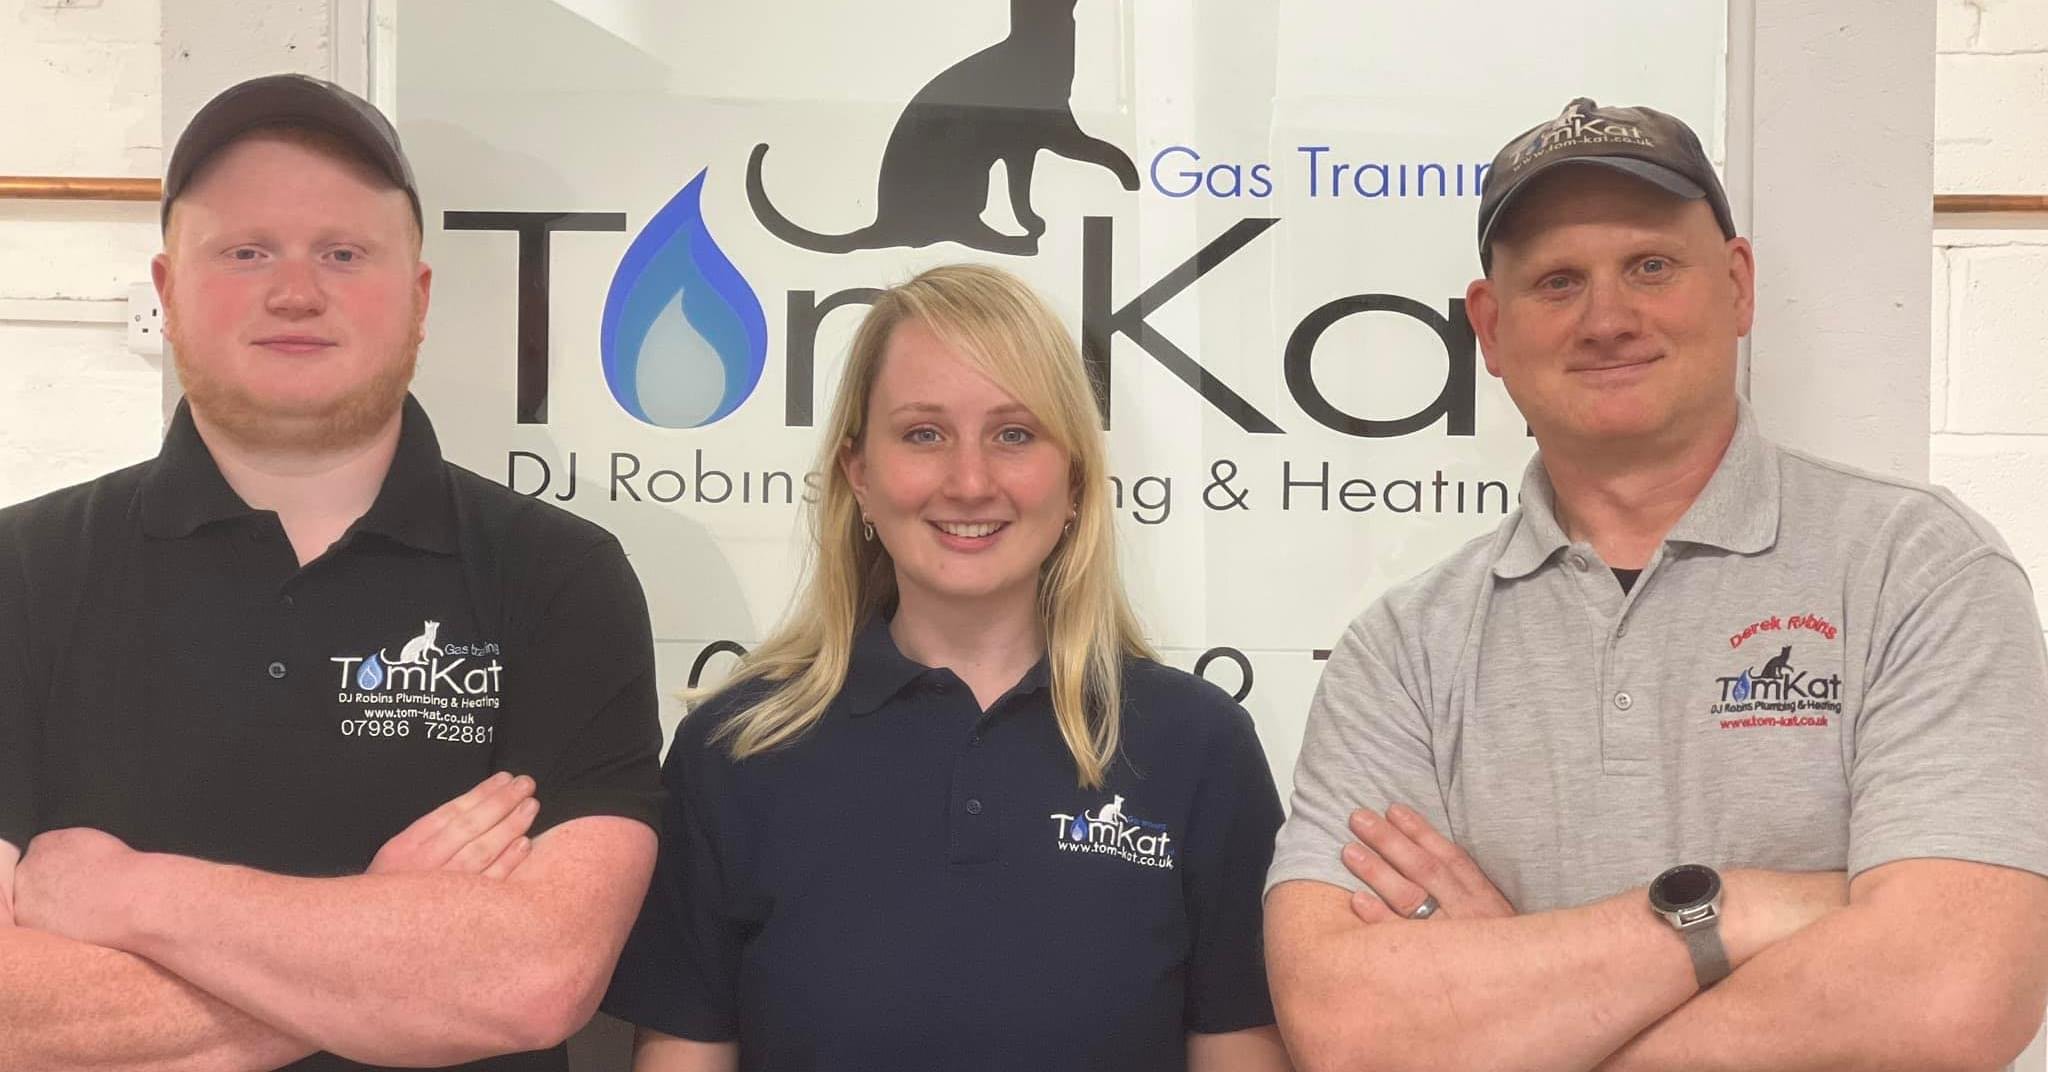 Tomkat Gas Training Ltd